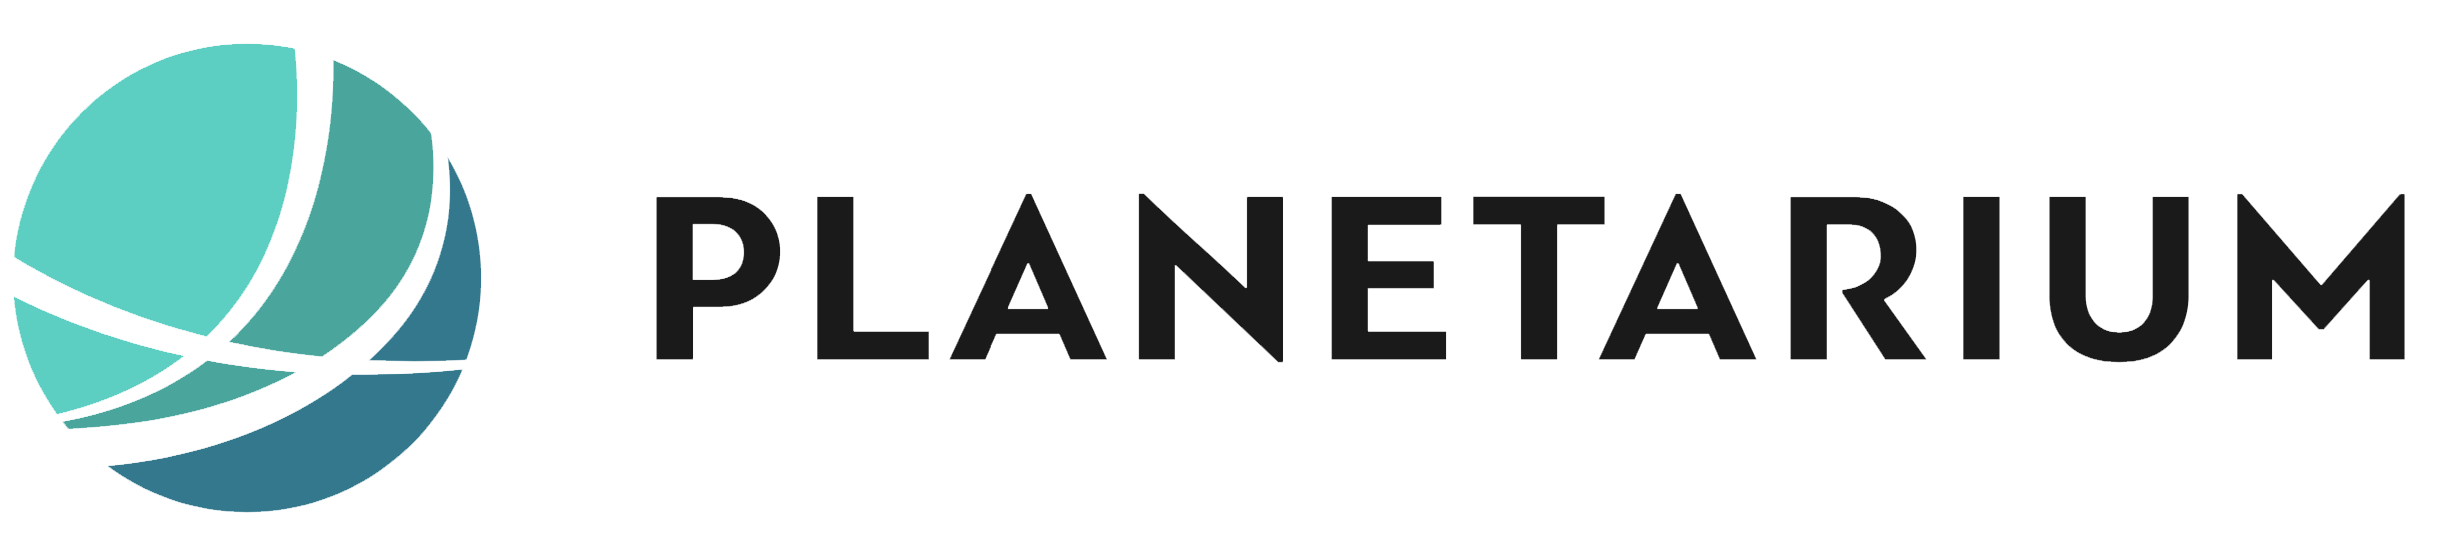 Planetarium_logo